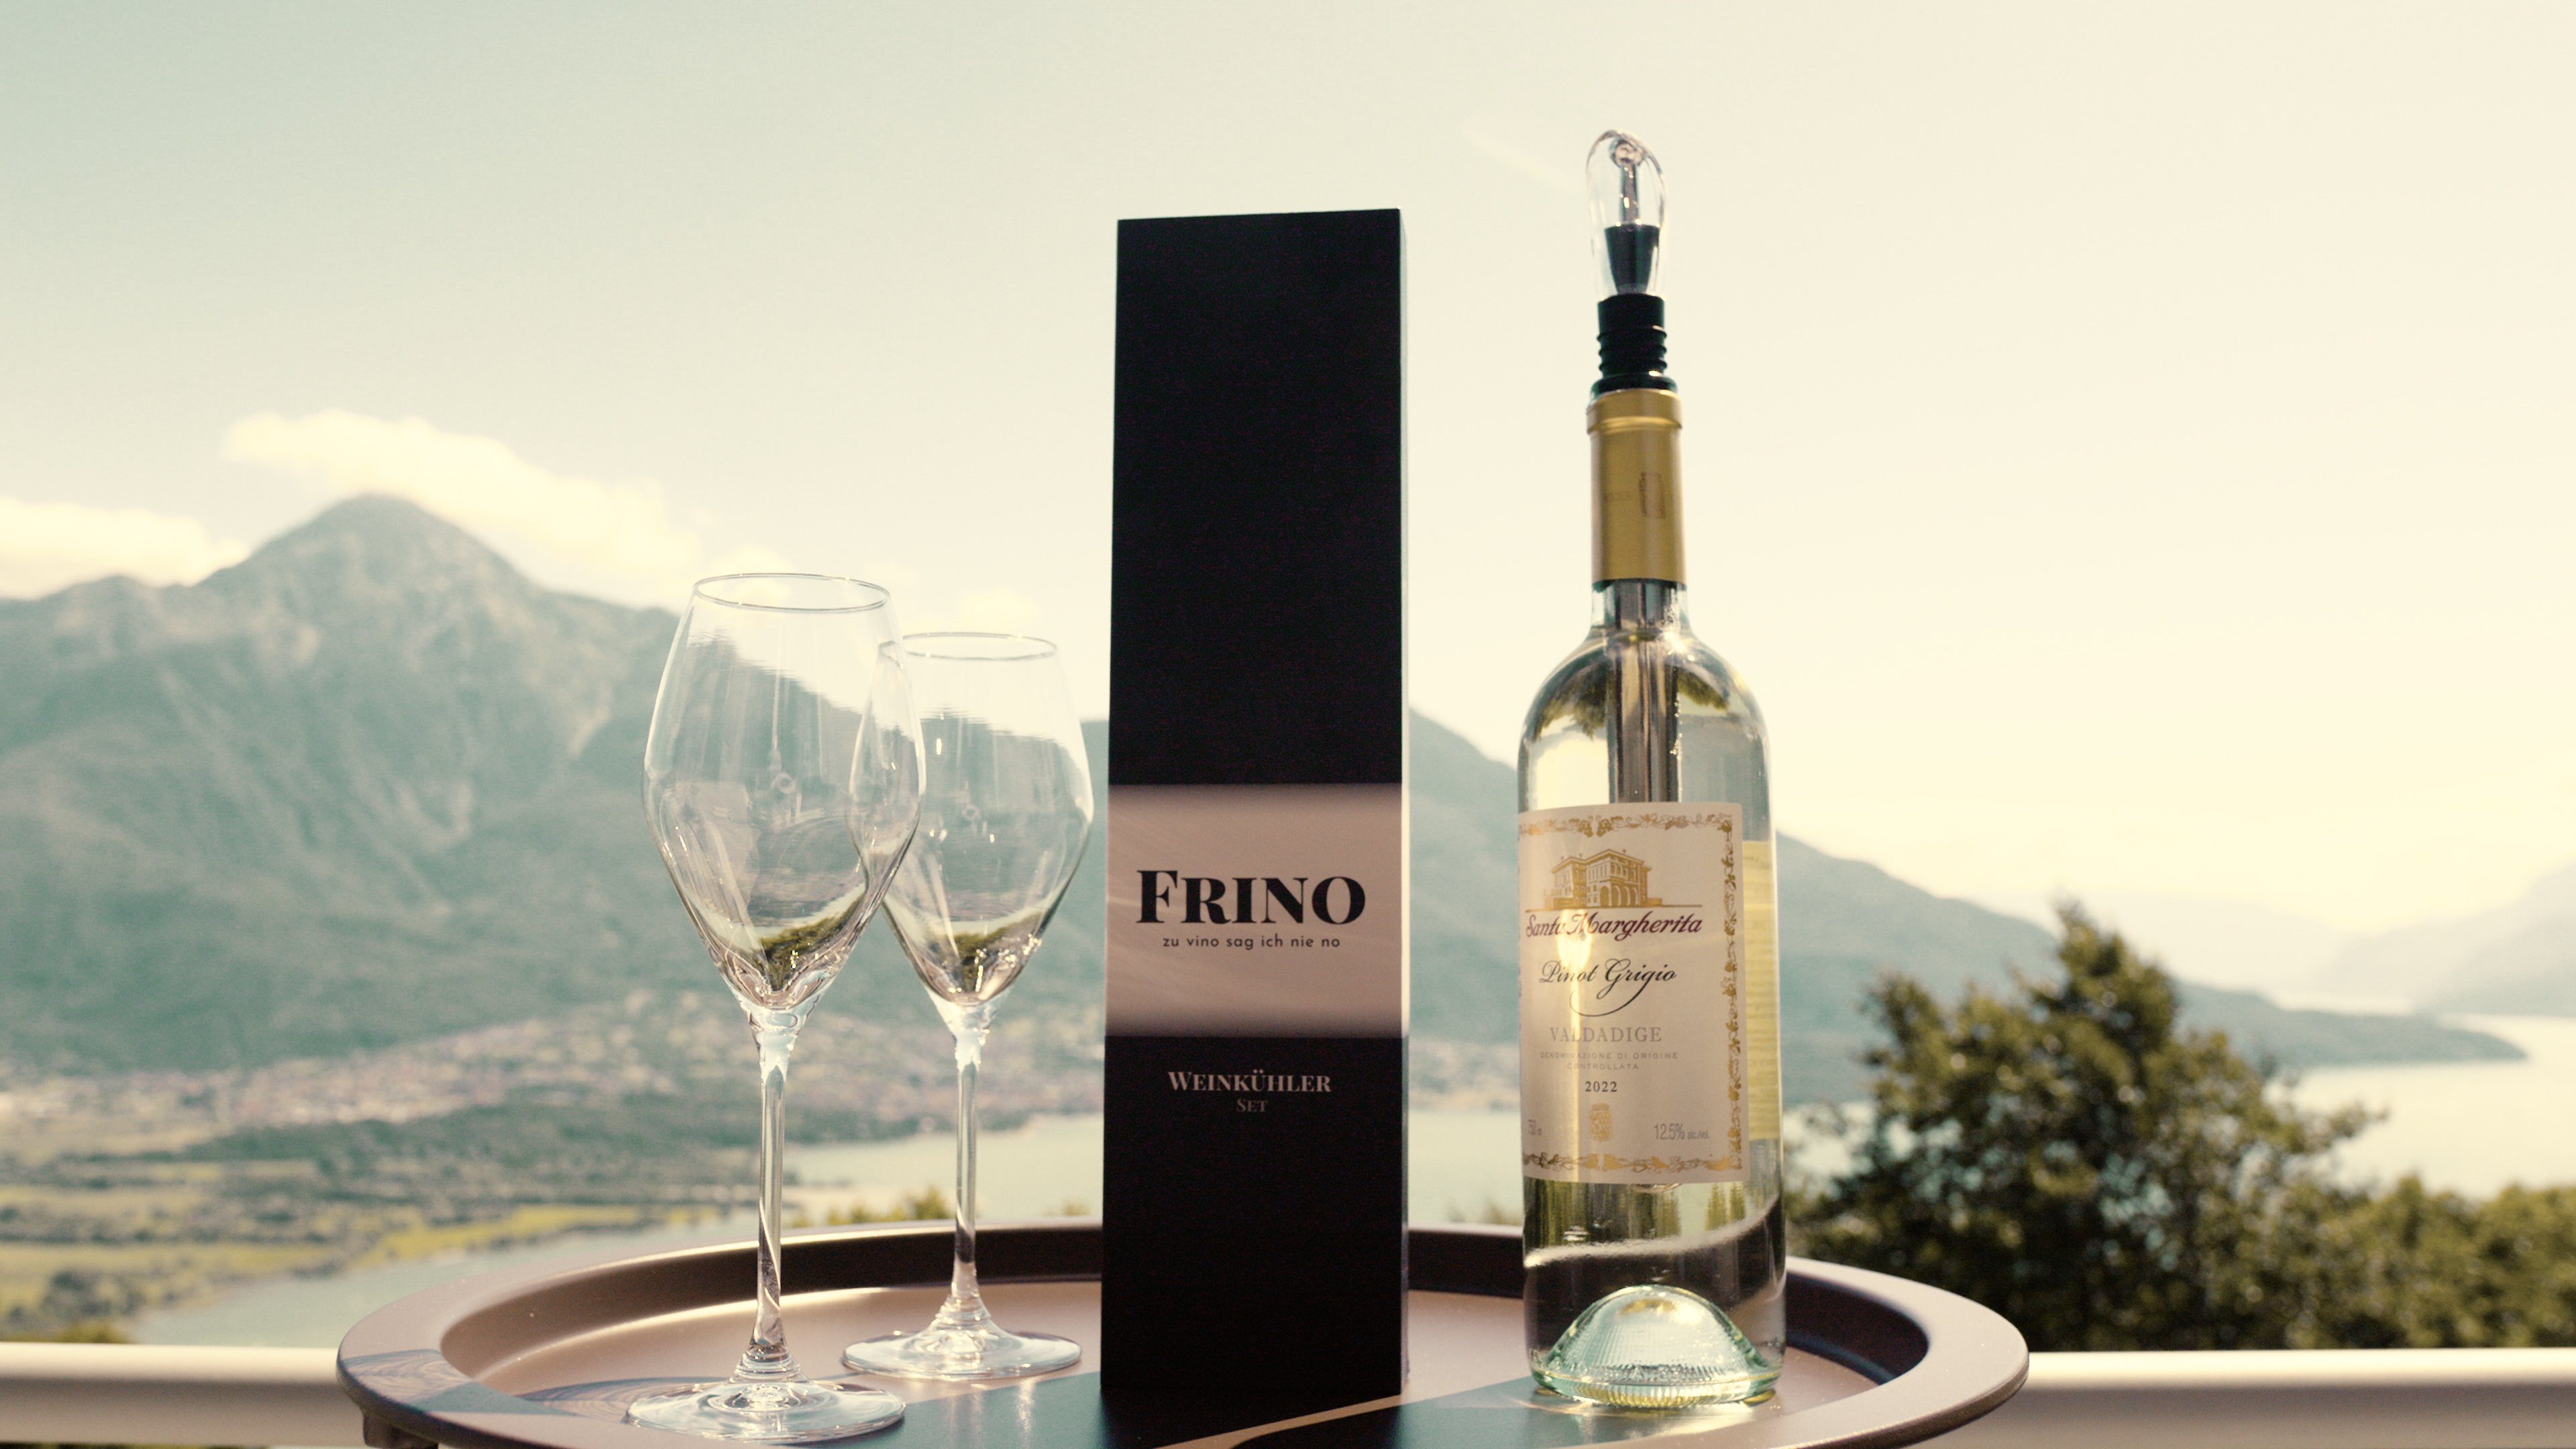 Geschenkidee FRINO™ mit GRÖSSEN] Set Premium und Wein- Sektkühler [2 Ausgießer, Weinkühler FRINO Weinkühlstab